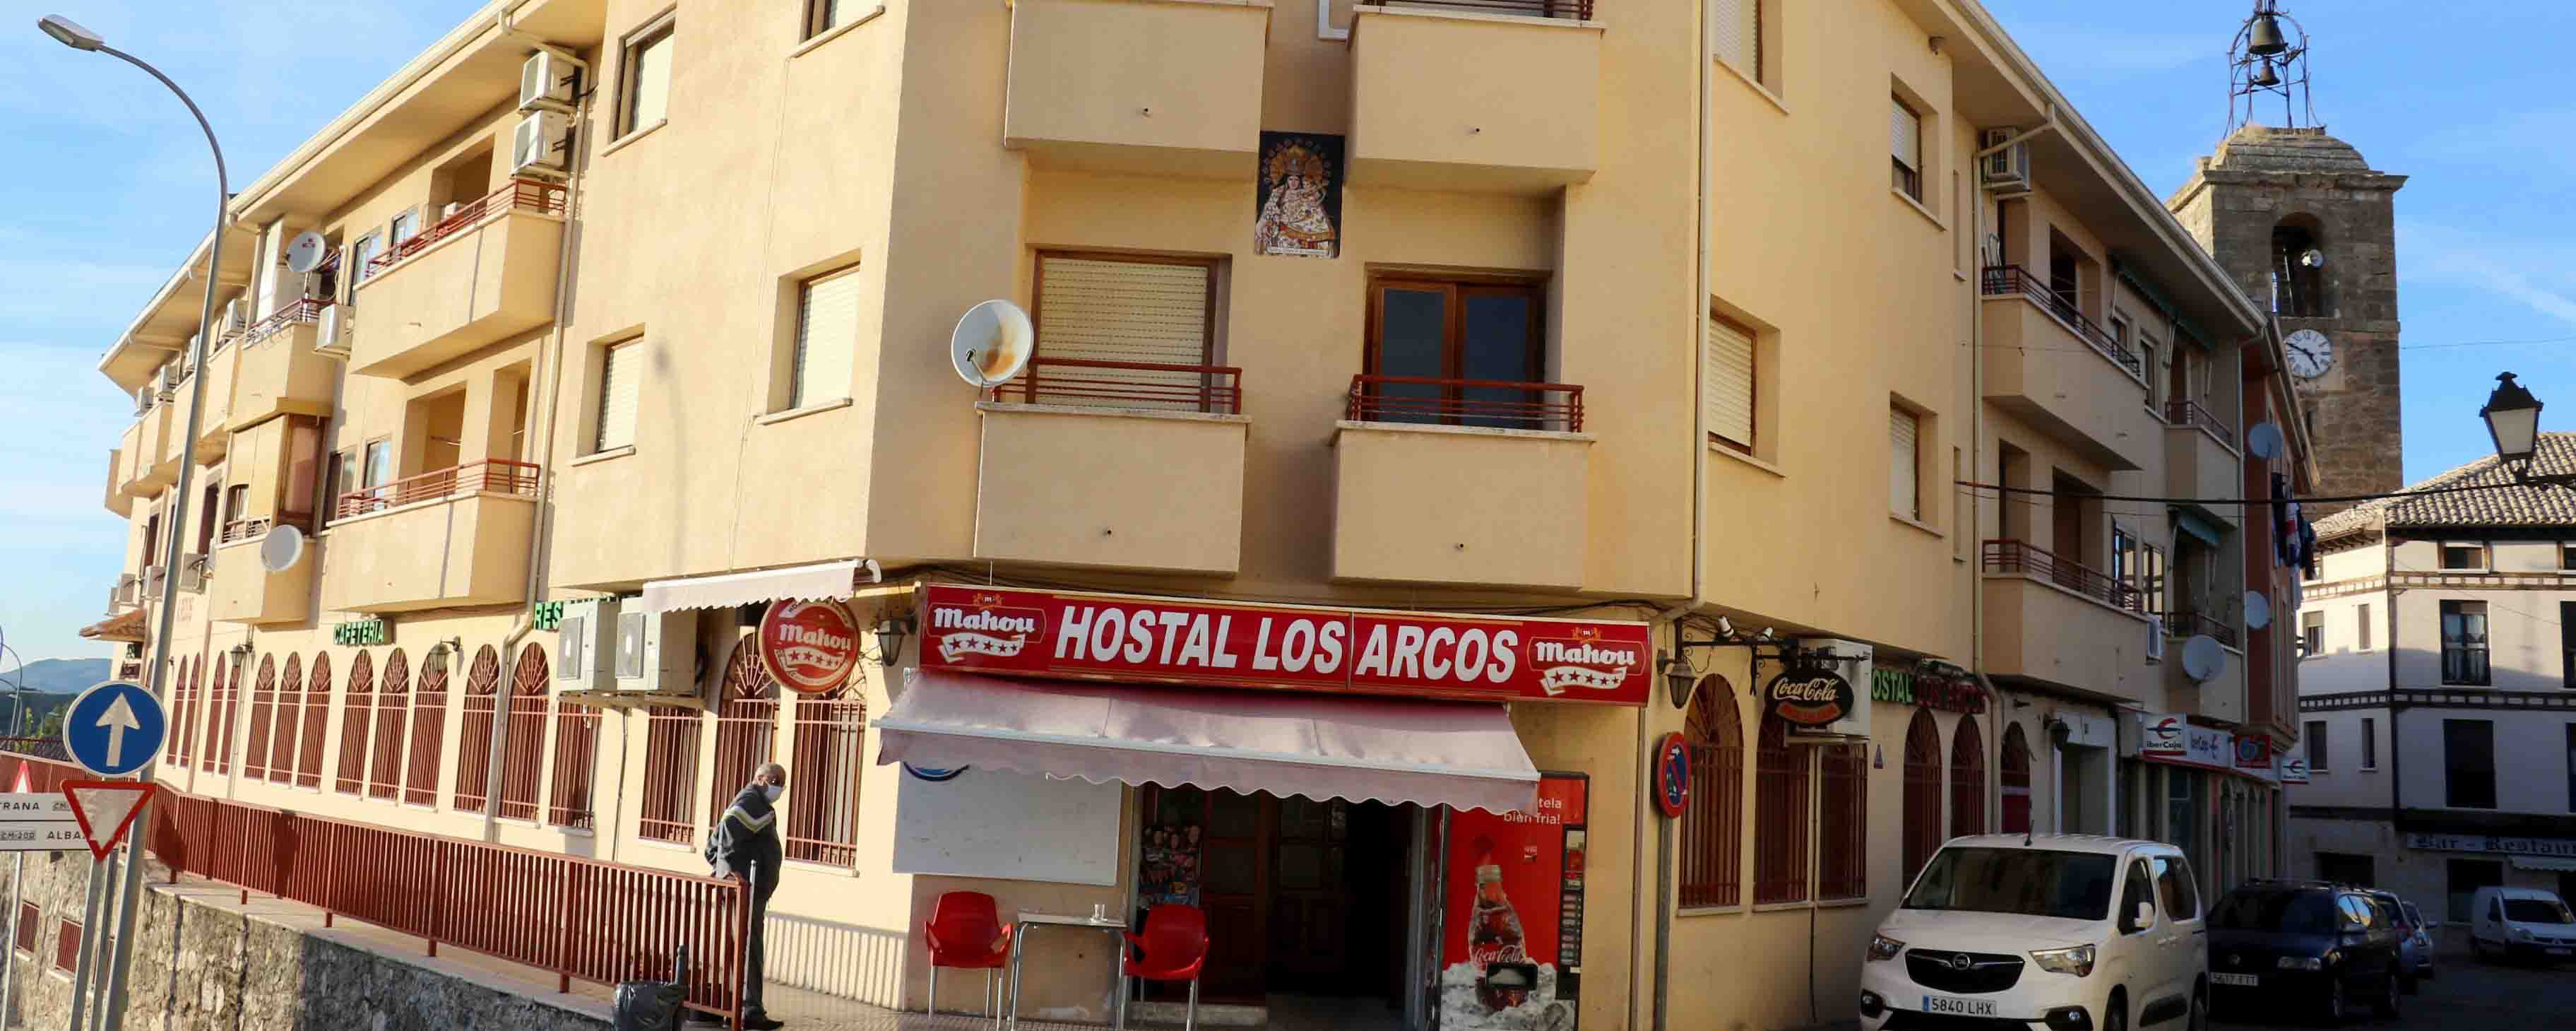 Hostal Los Arcos, un negocio familiar con más de treinta años de historia en Almonacid de Zorita